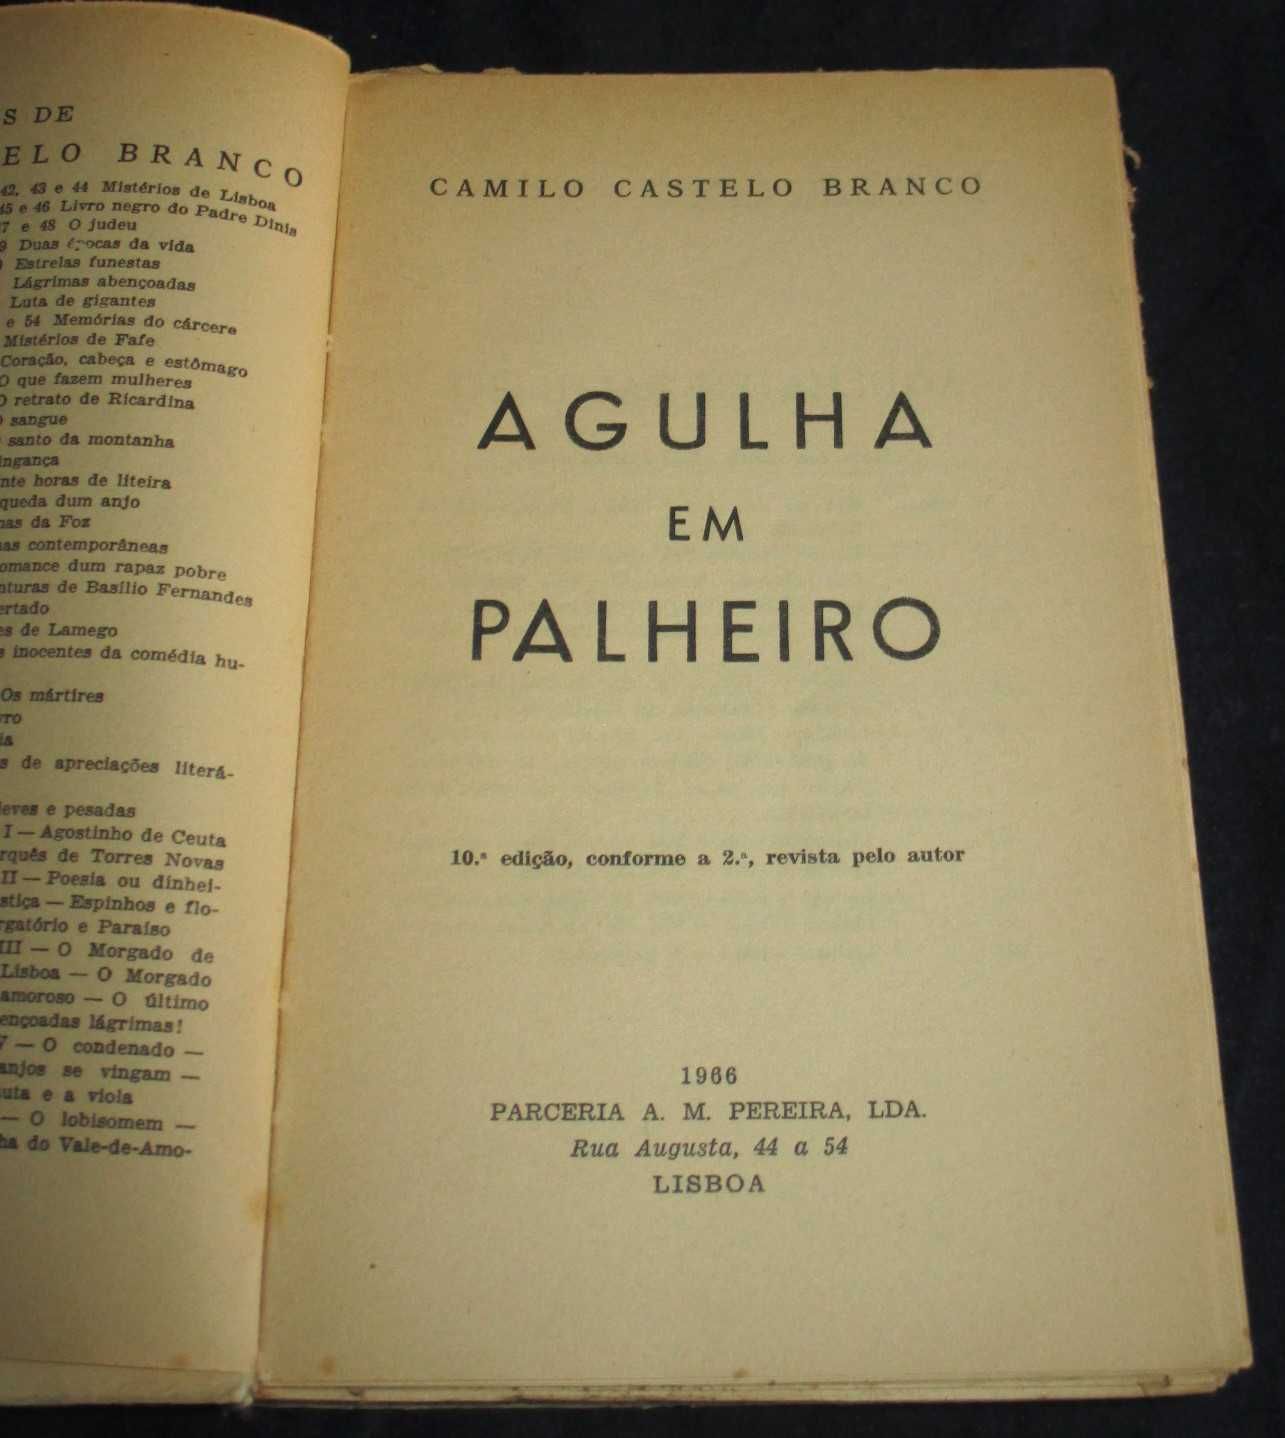 Livro Agulha em palheiro Camilo Castelo Branco